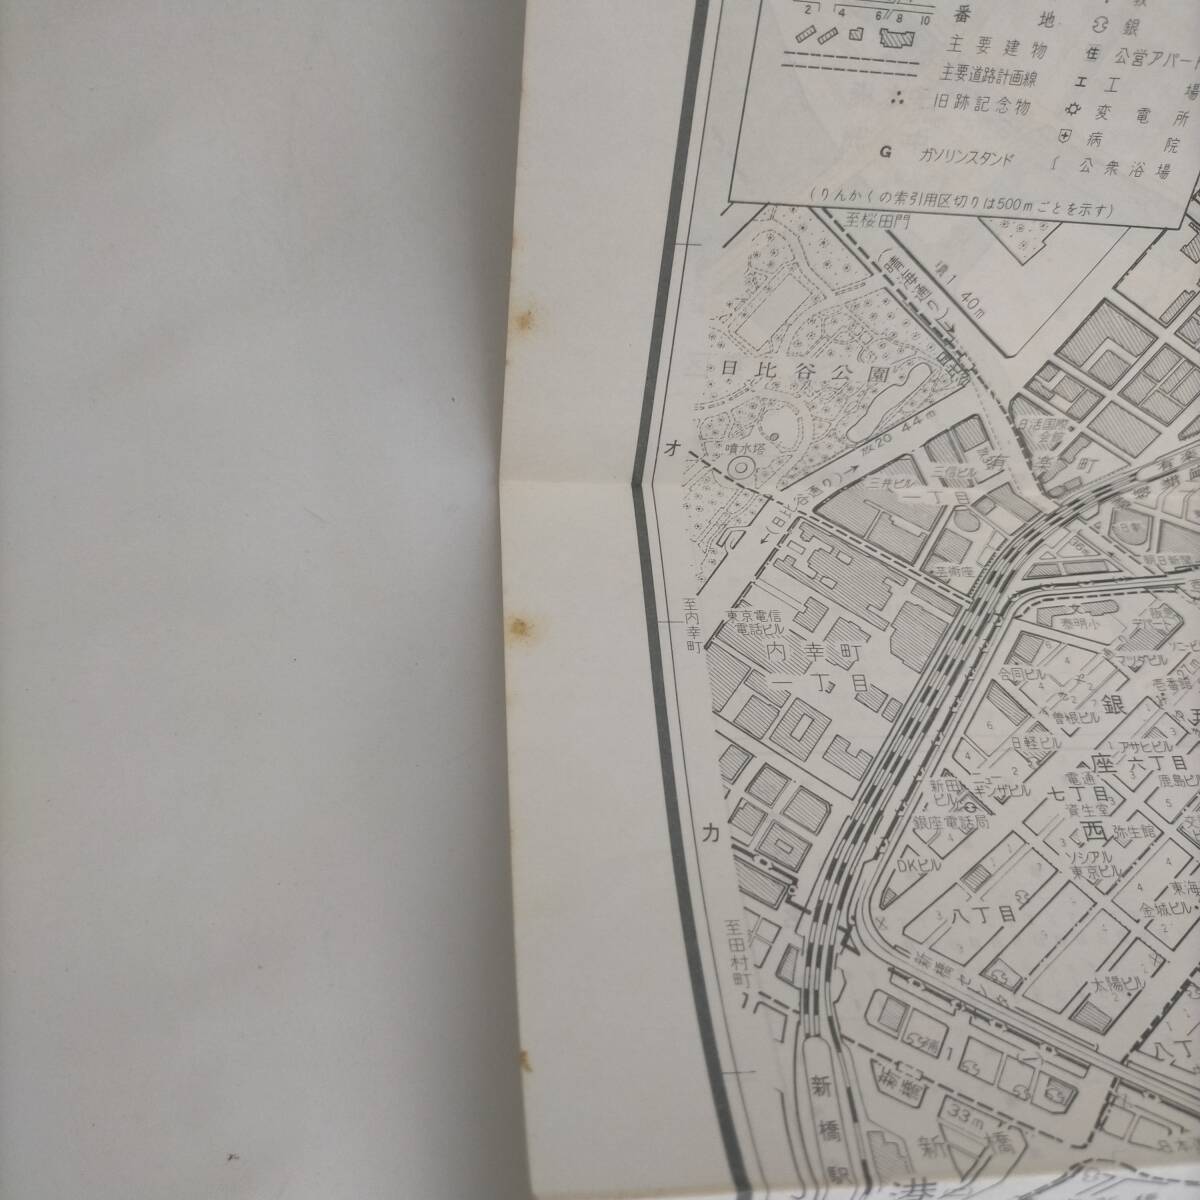 東京都区分詳細図 中央区 日地出版 昭和46年の画像2